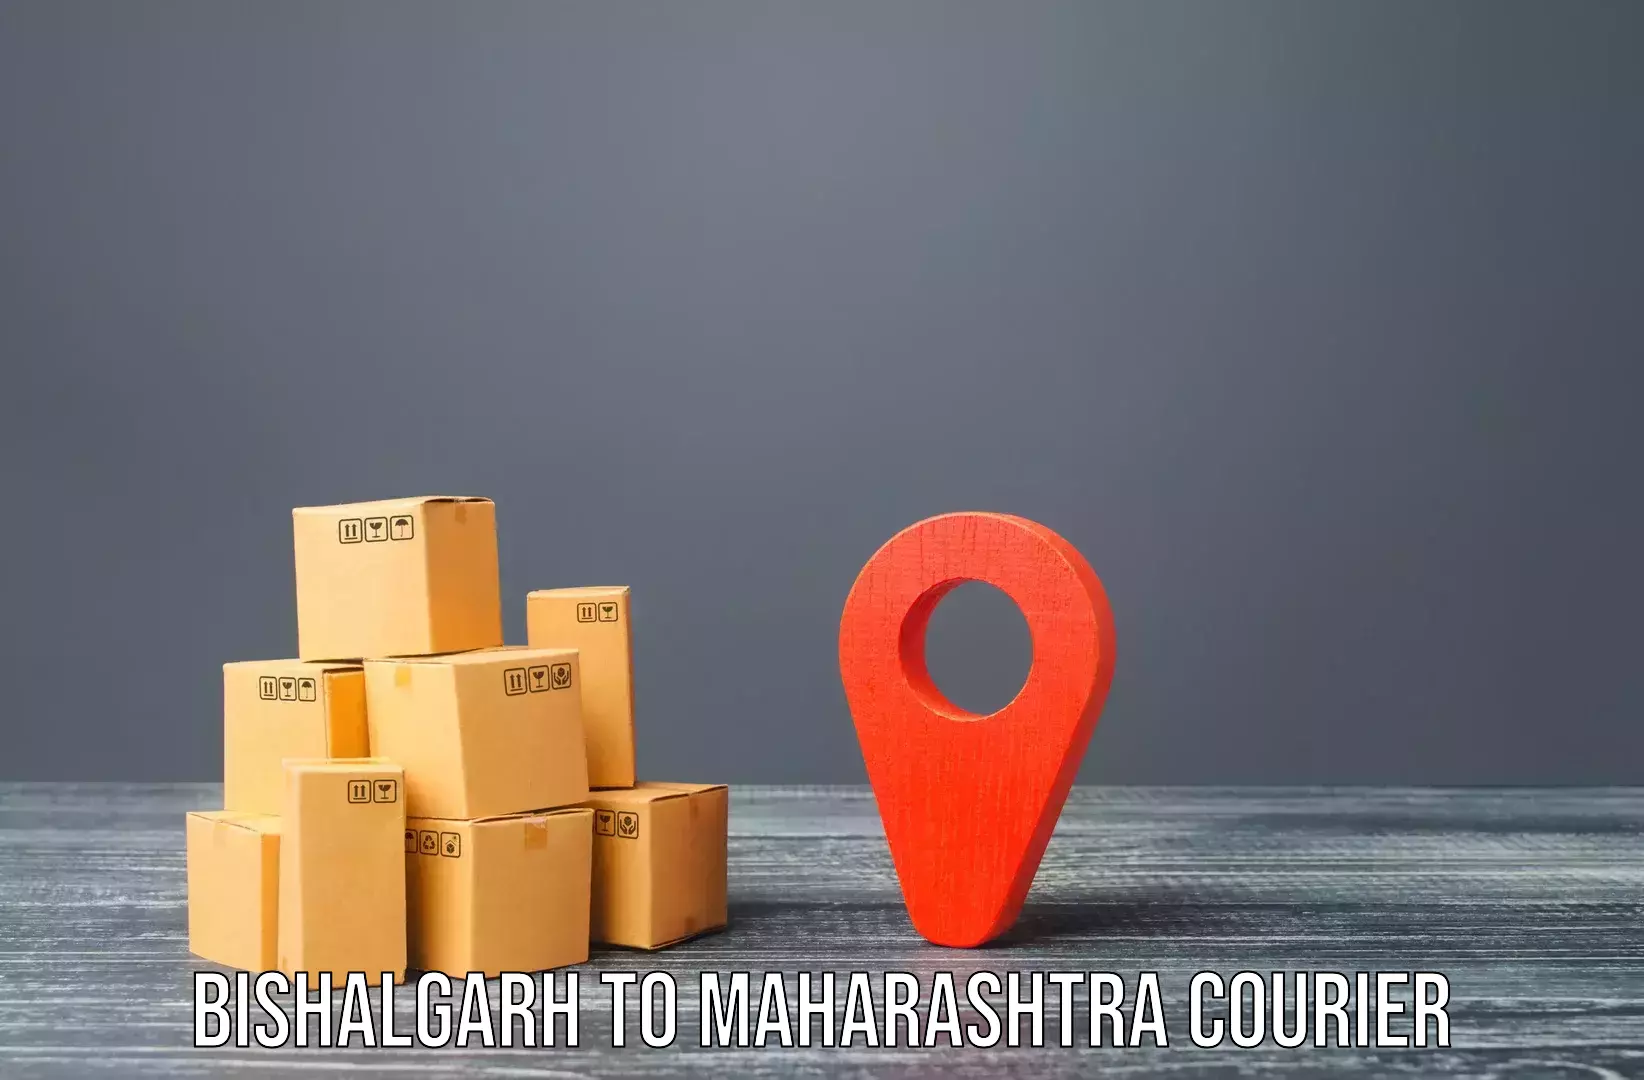 Furniture transport experts Bishalgarh to IIIT Pune